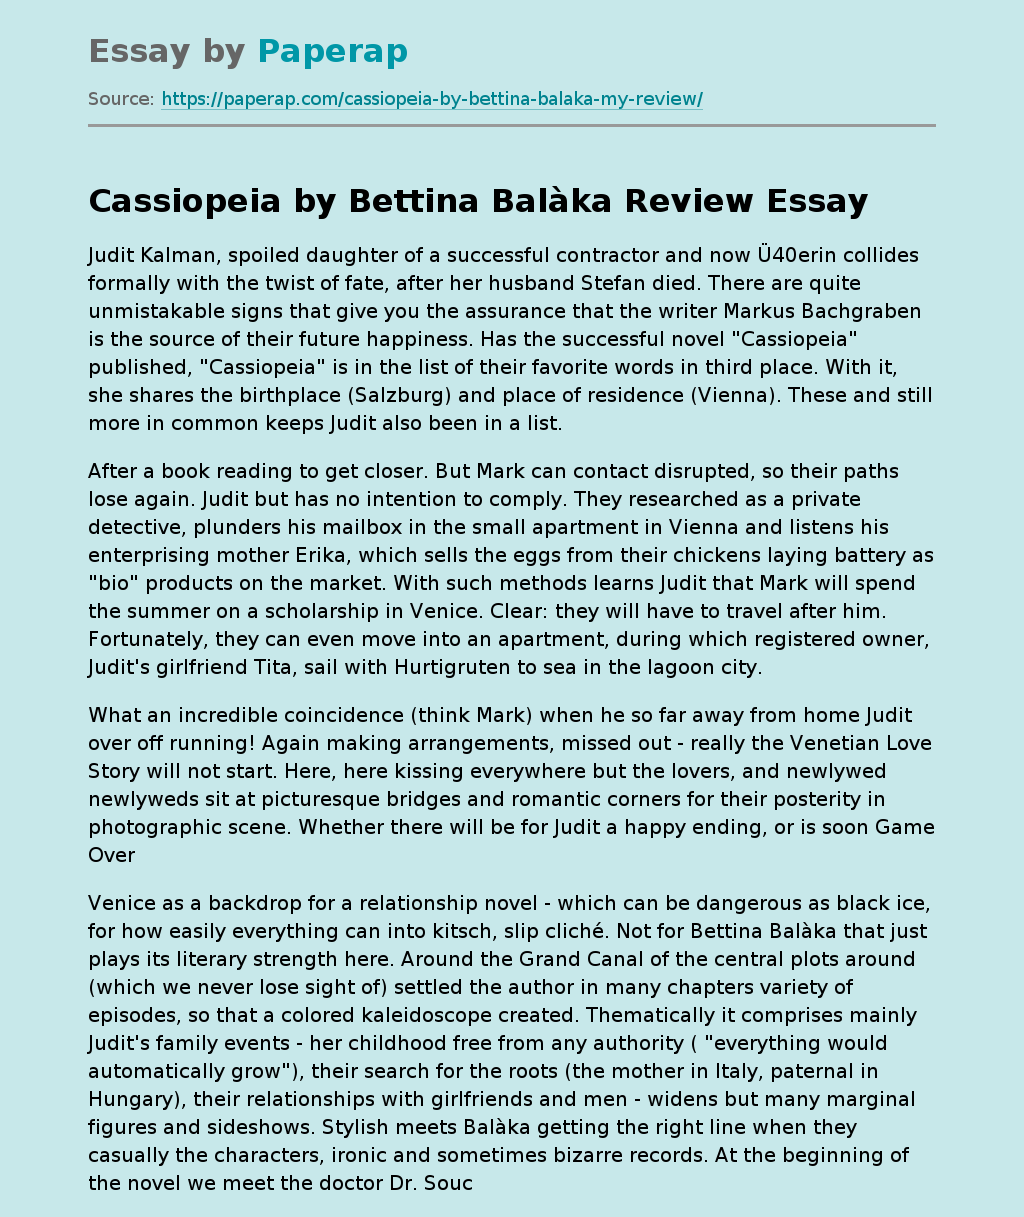 "Cassiopeia" by Bettina Balàka